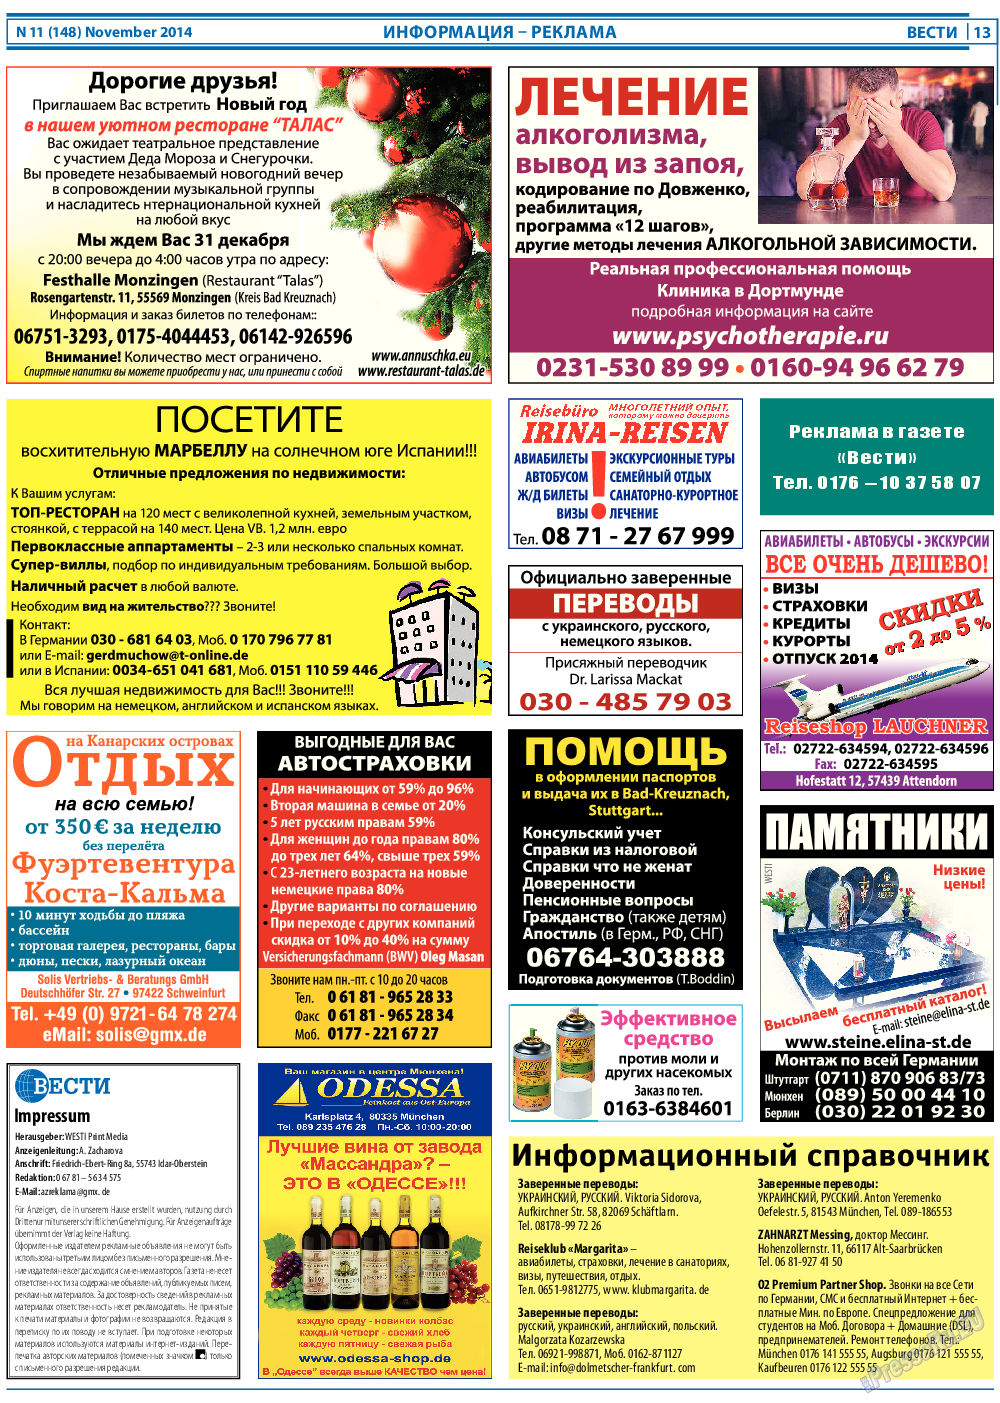 Вести, газета. 2014 №11 стр.13